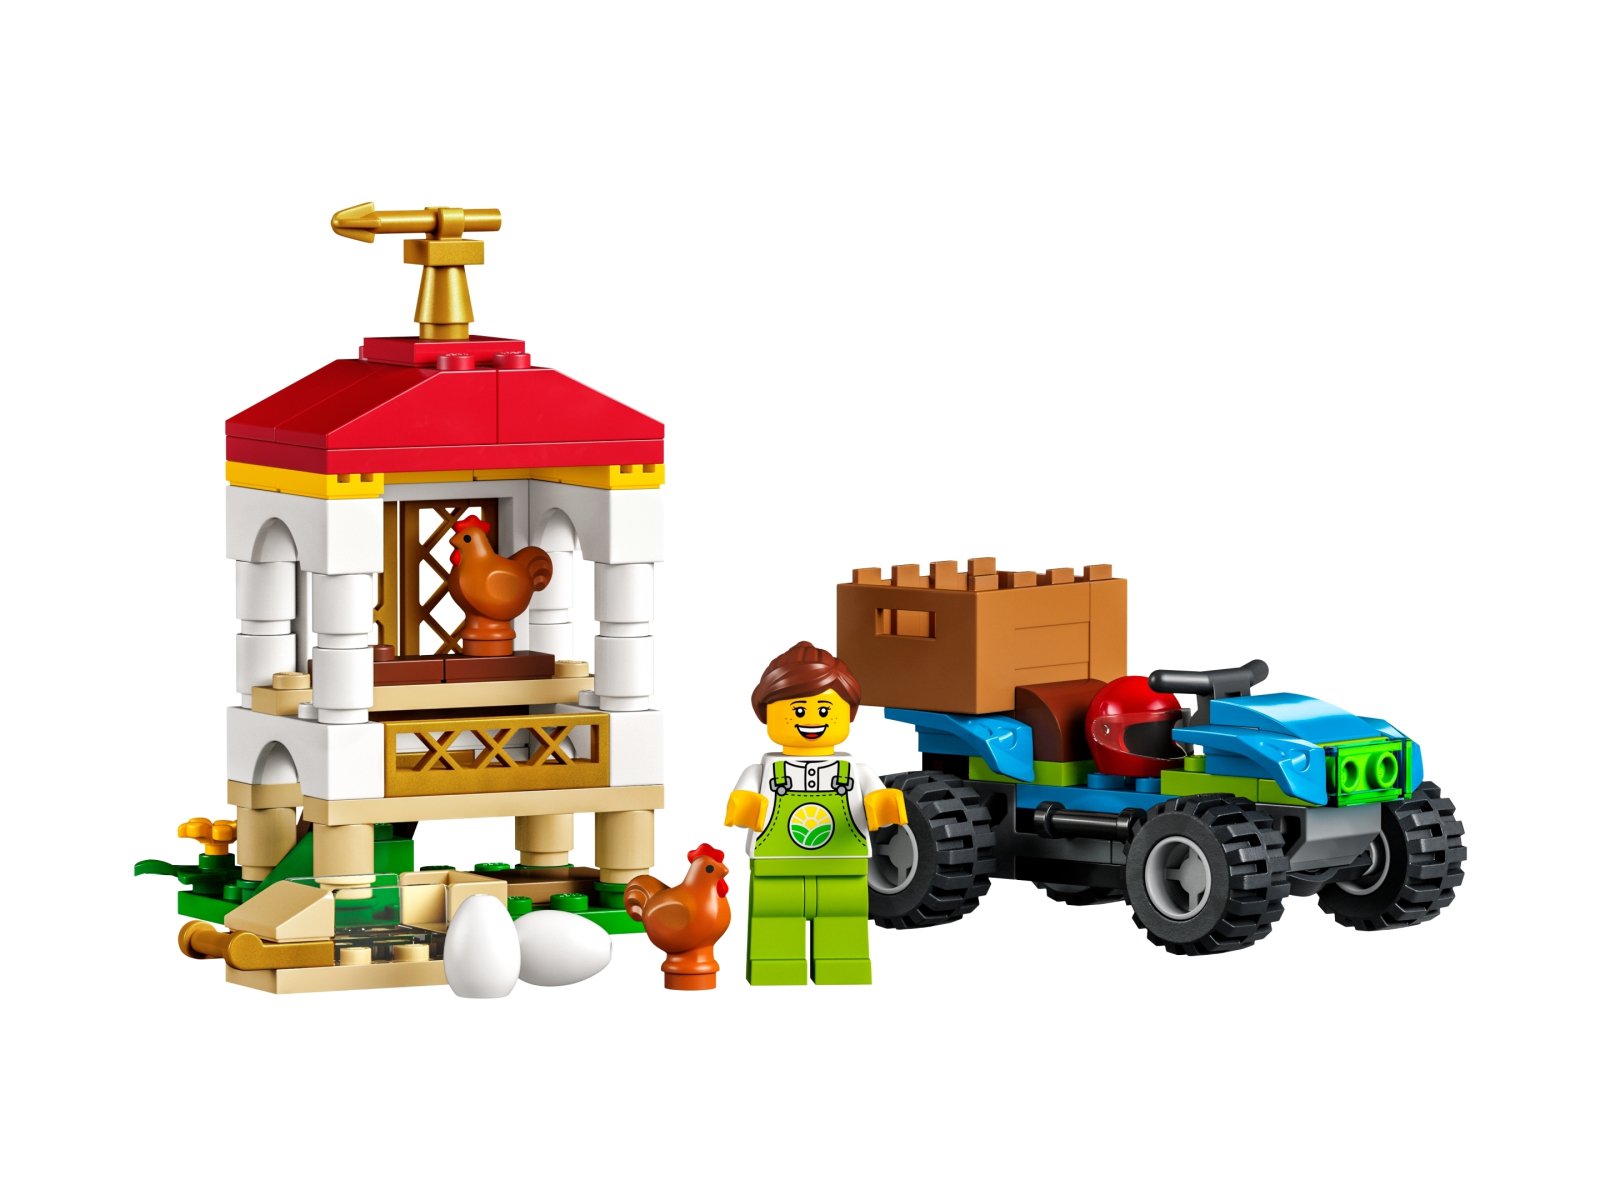 LEGO 60344 City Kurnik z kurczakami